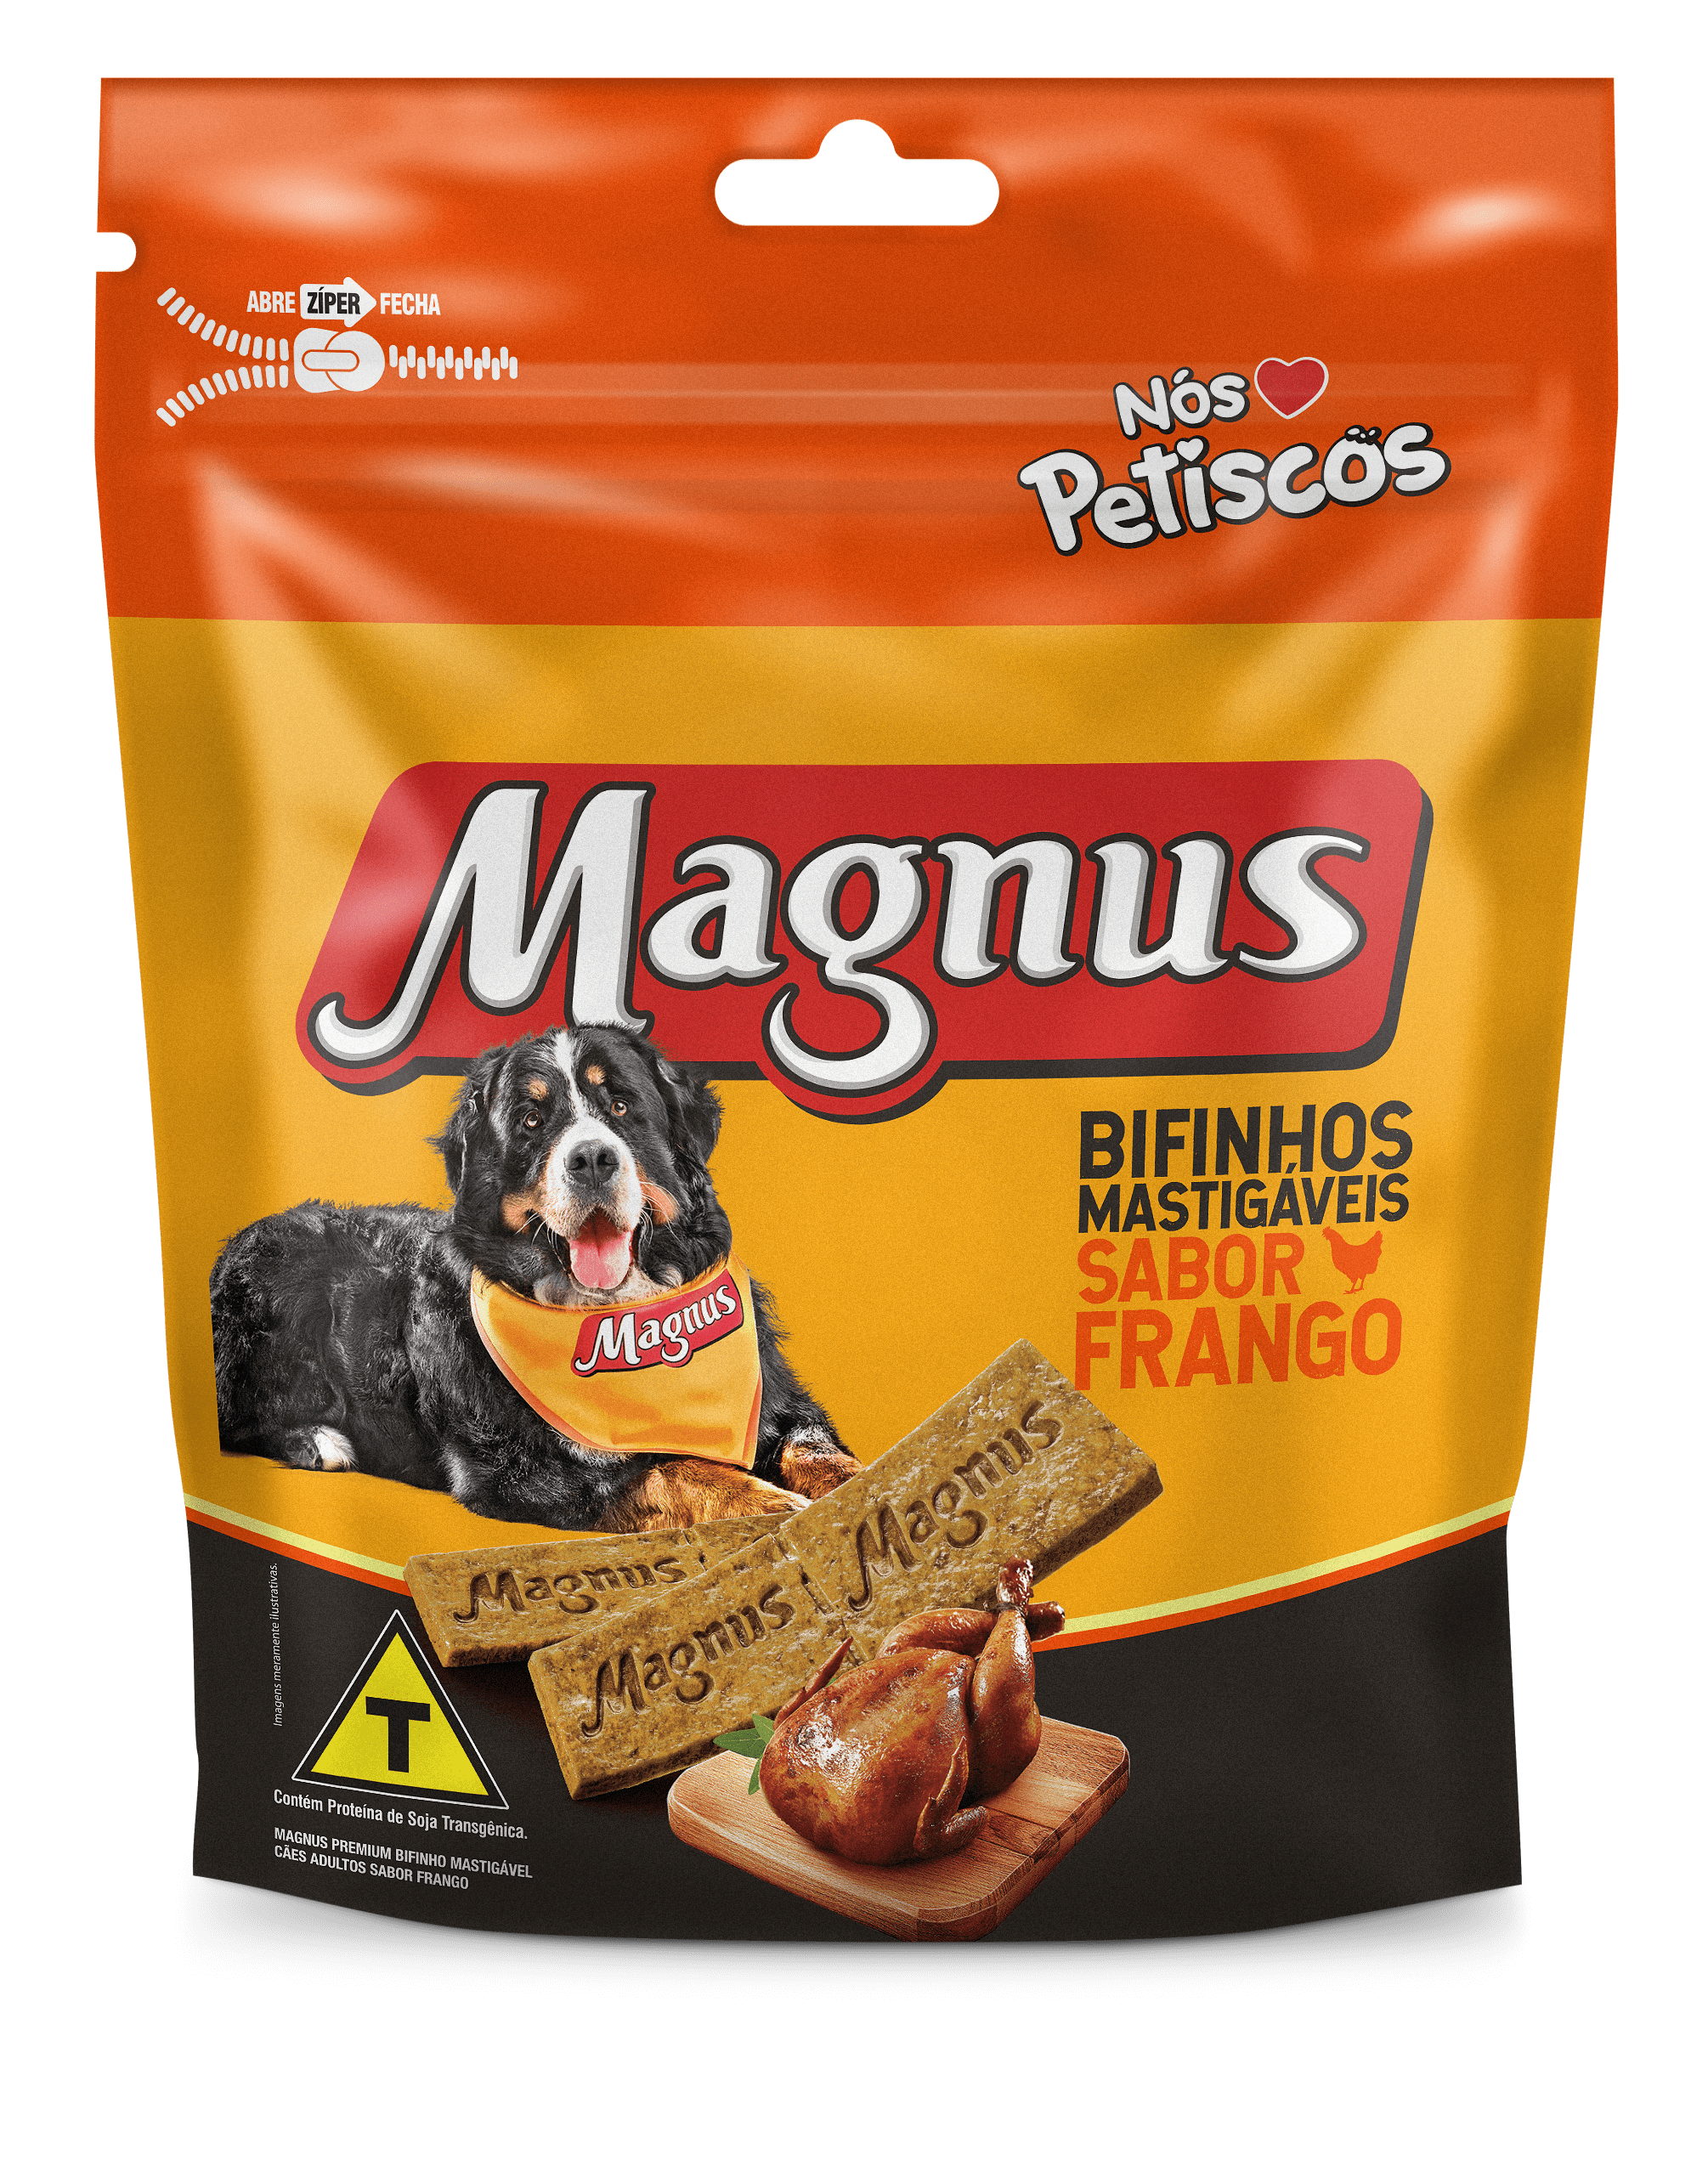 Magnus Bifinhos Mastigáveis Adult Dogs Chicken Flavor